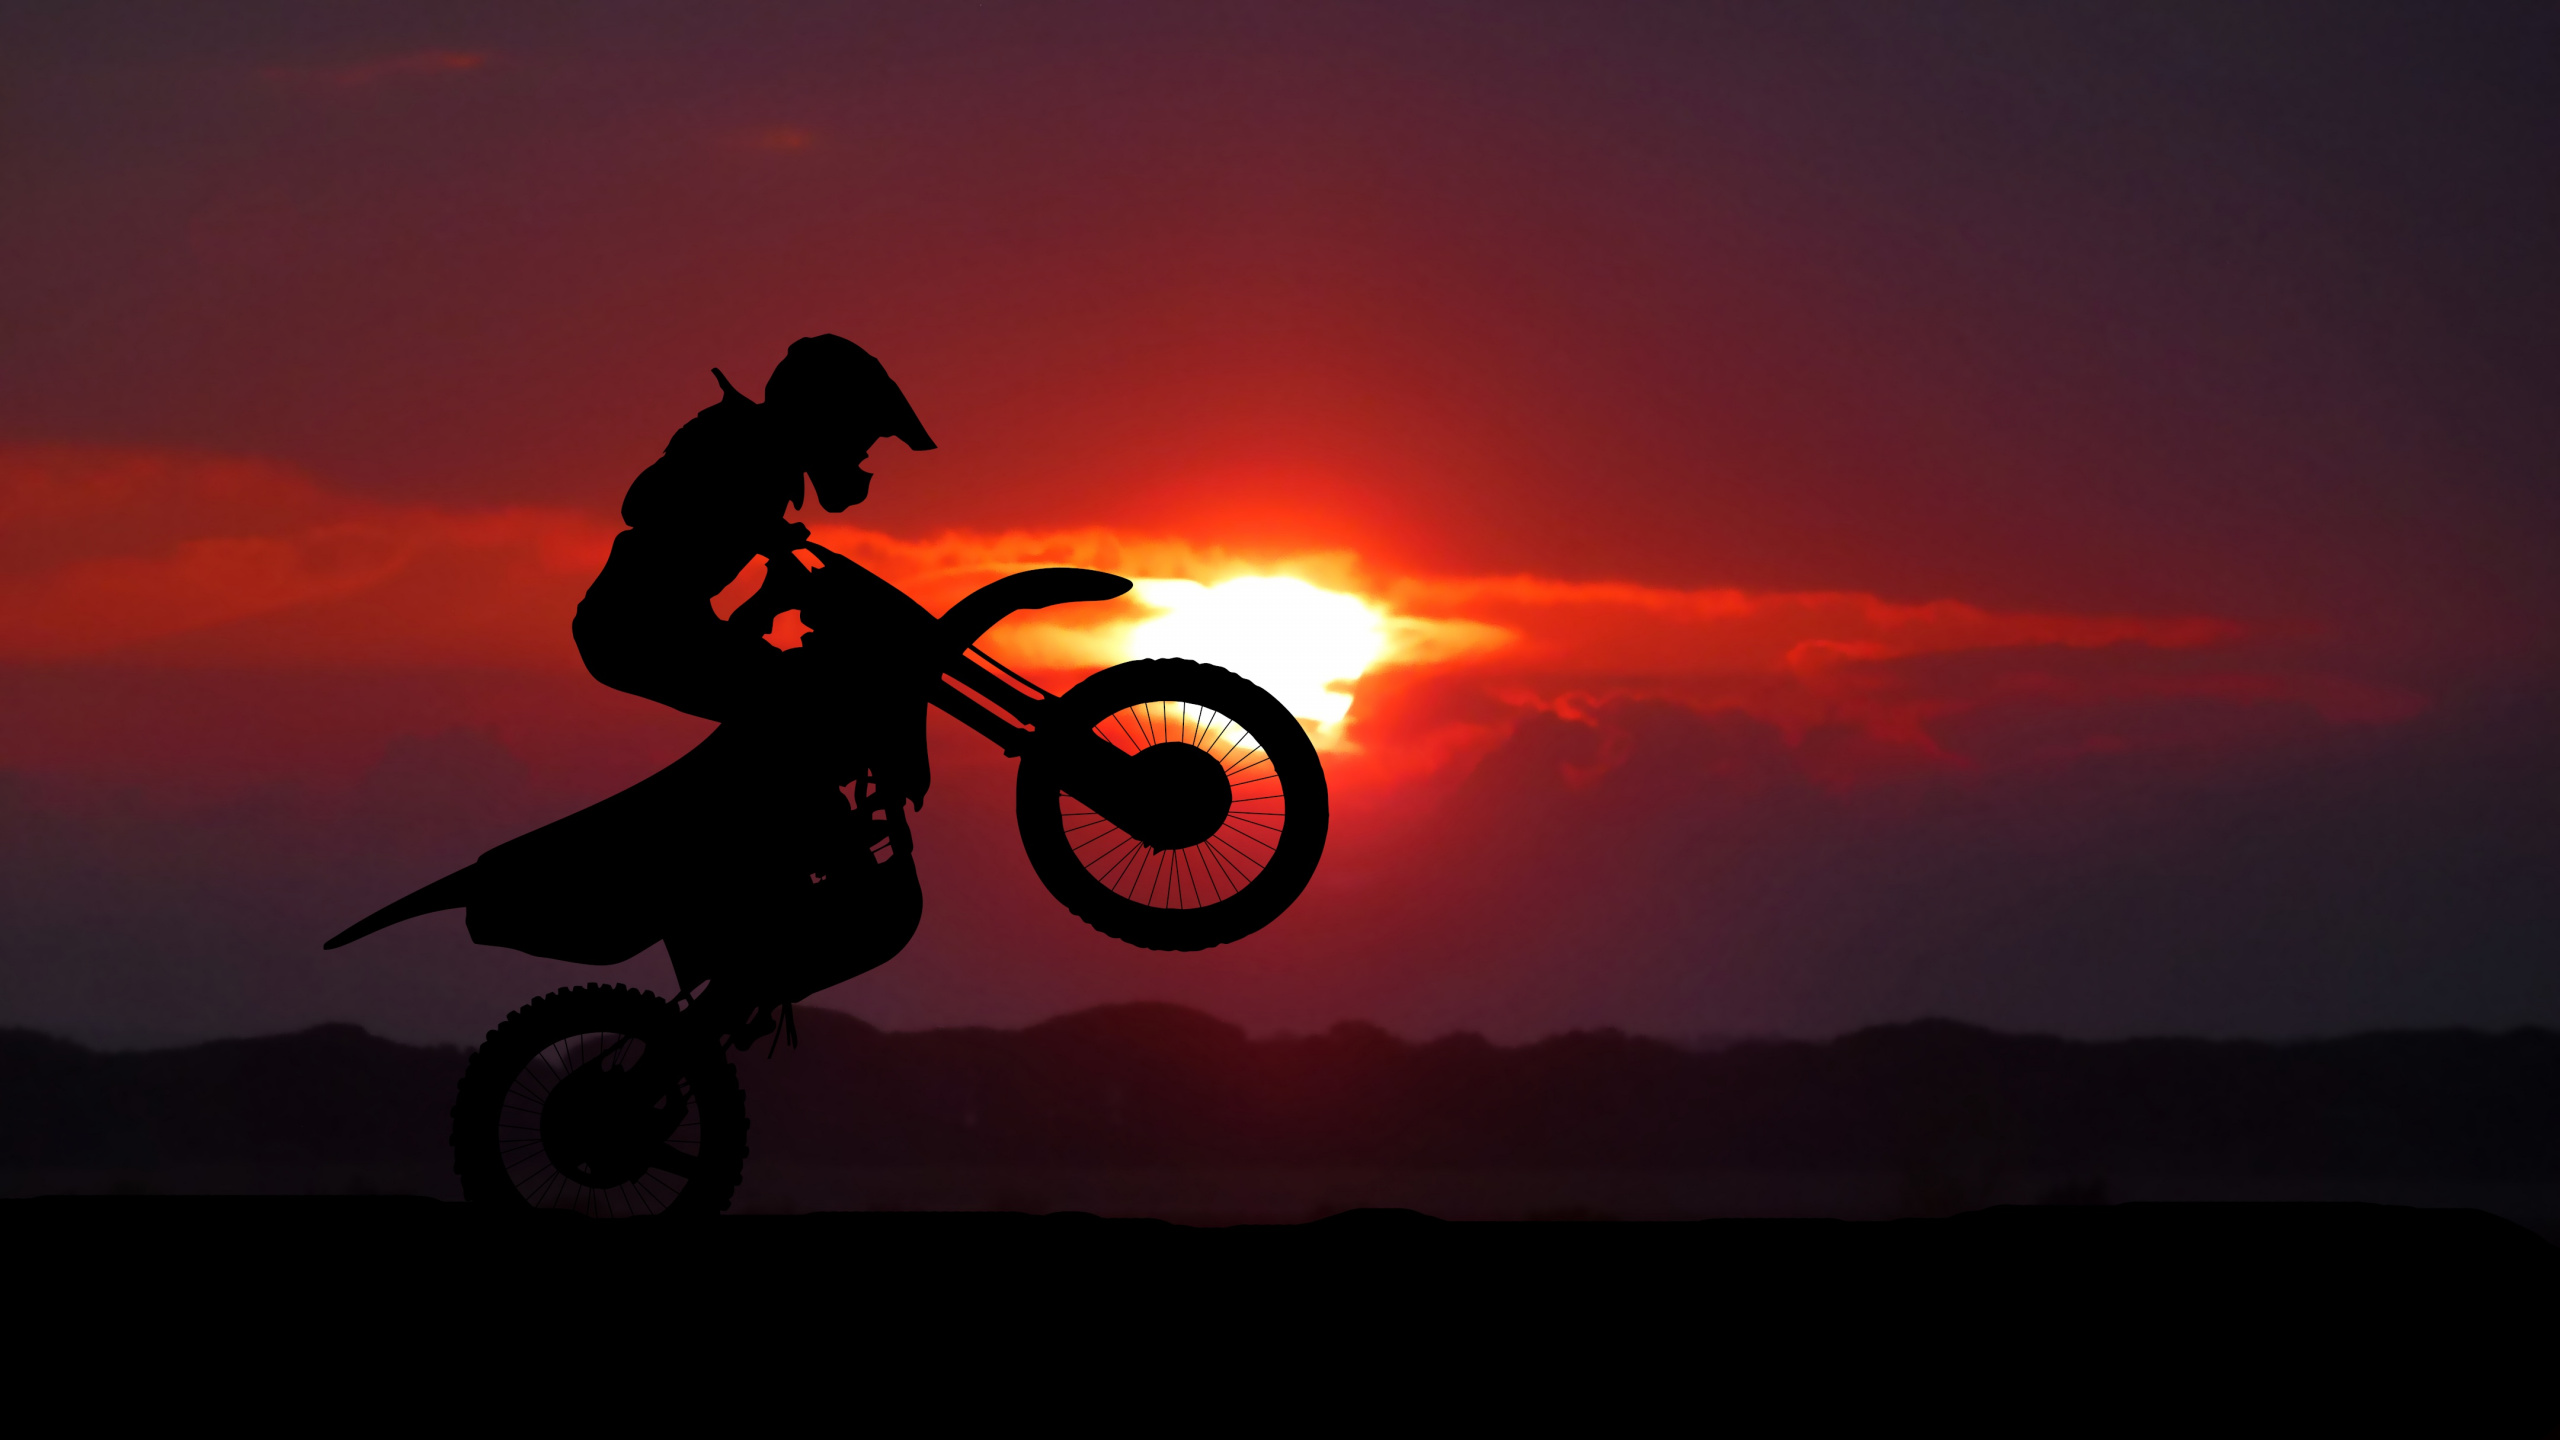 摩托车运动, 骑摩托车特技, 越野, 自由式的摩托车越野赛, 摩托车越野赛 壁纸 2560x1440 允许